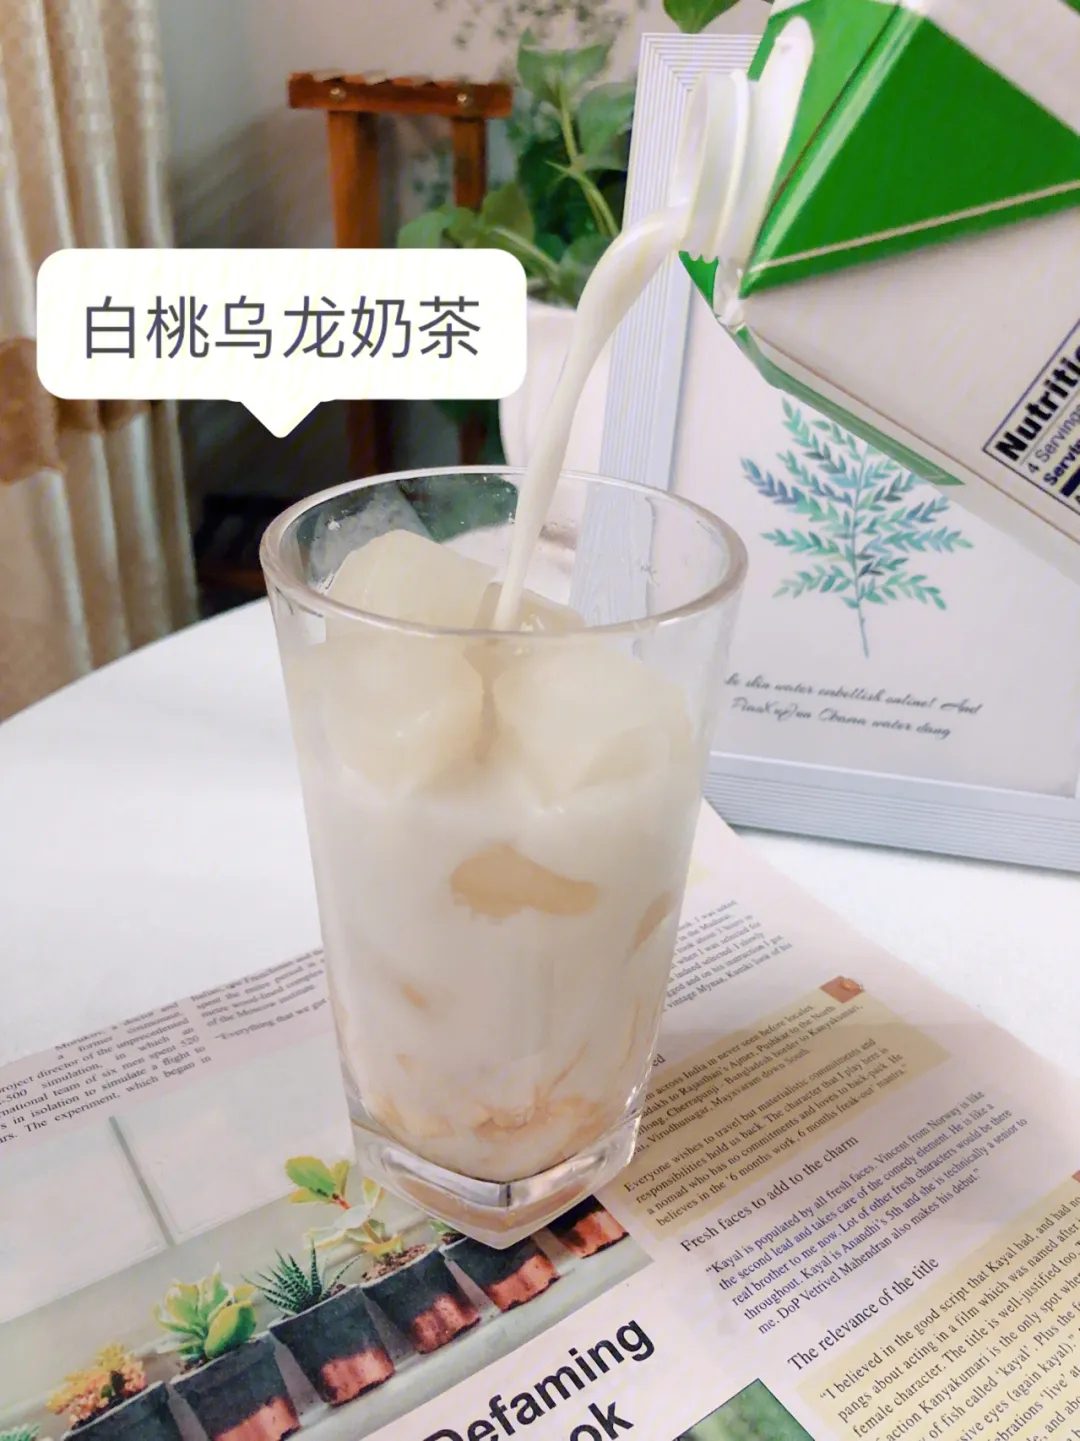 What is white peach oolong milk tea